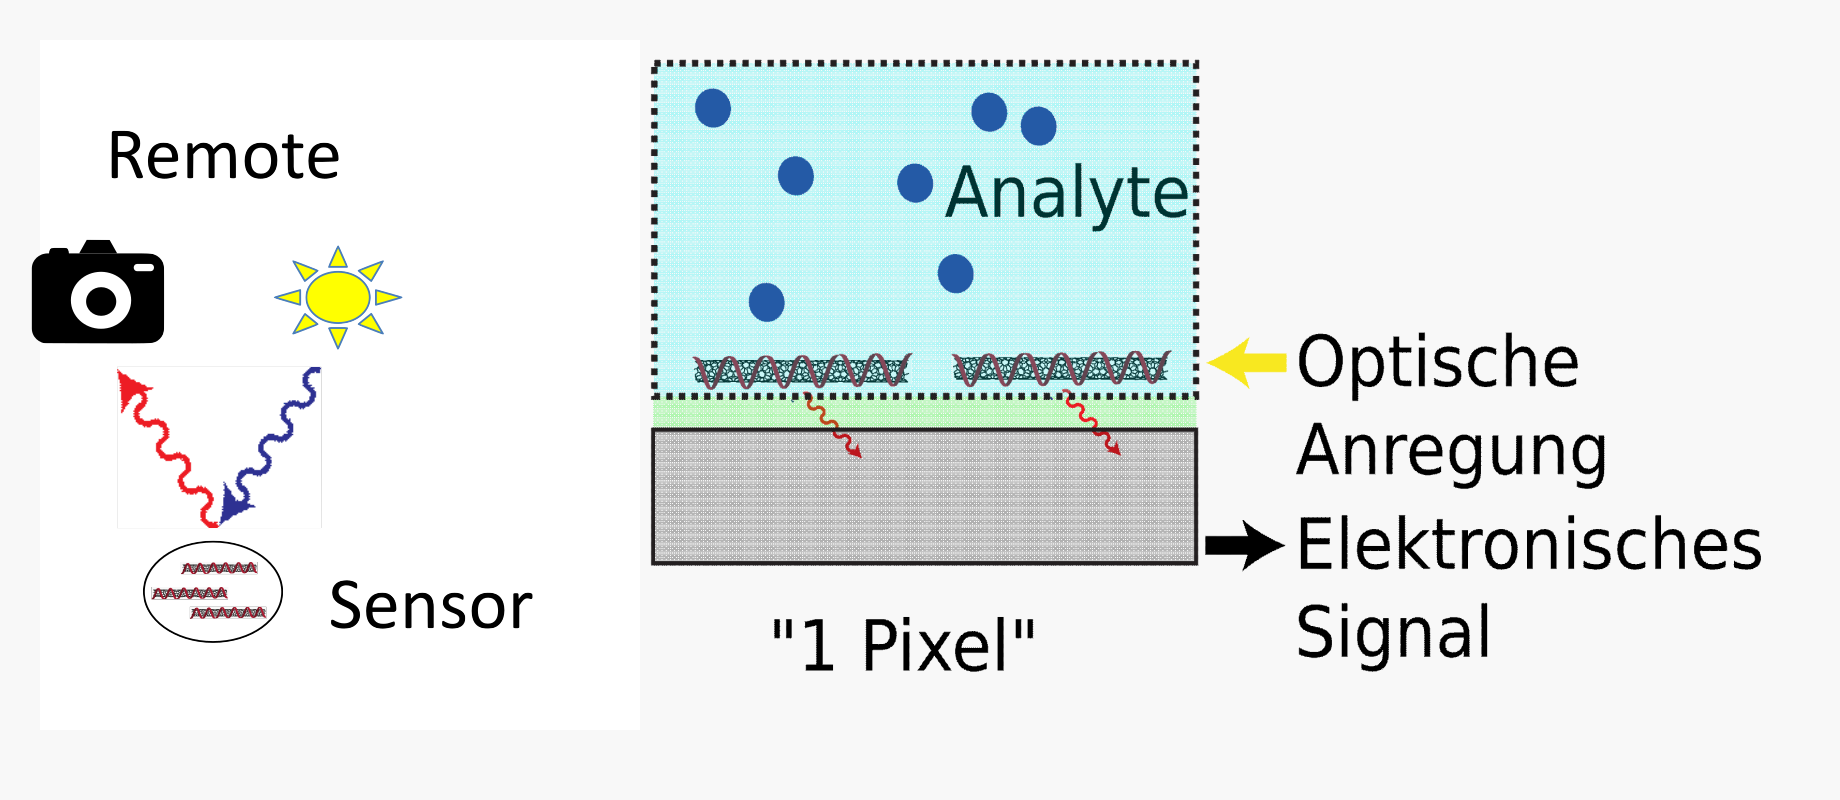 Konzepte der Nano-Biosensoren sind optische remote Detektion und kompakte Integration hochsensitiver, biofunktionalisierter Nanomaterialien on-Chip. 